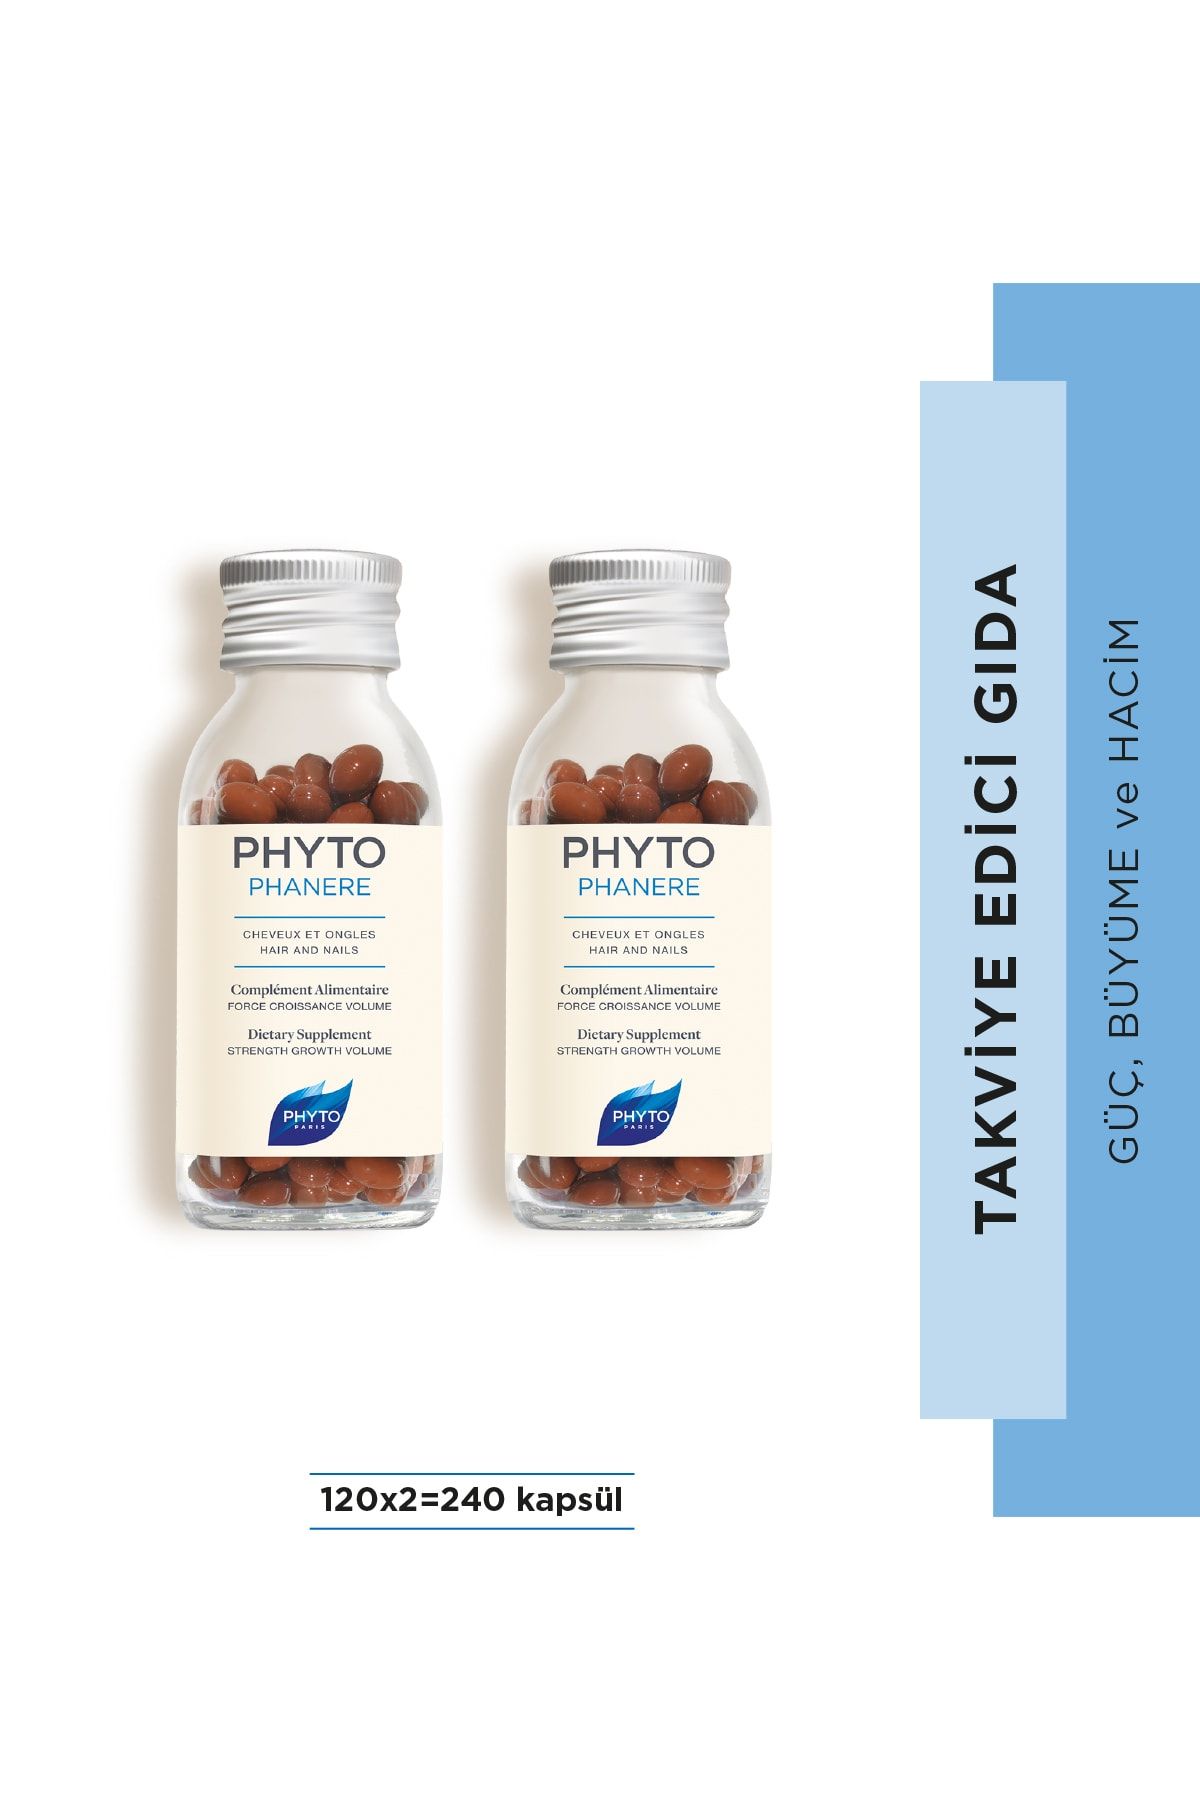 Phyto Duo Phytophanere Saç ve Tırnaklar için Güç, Büyüme & Hacim Sağlayan Takviye Edici Gıda 240 Kapsül